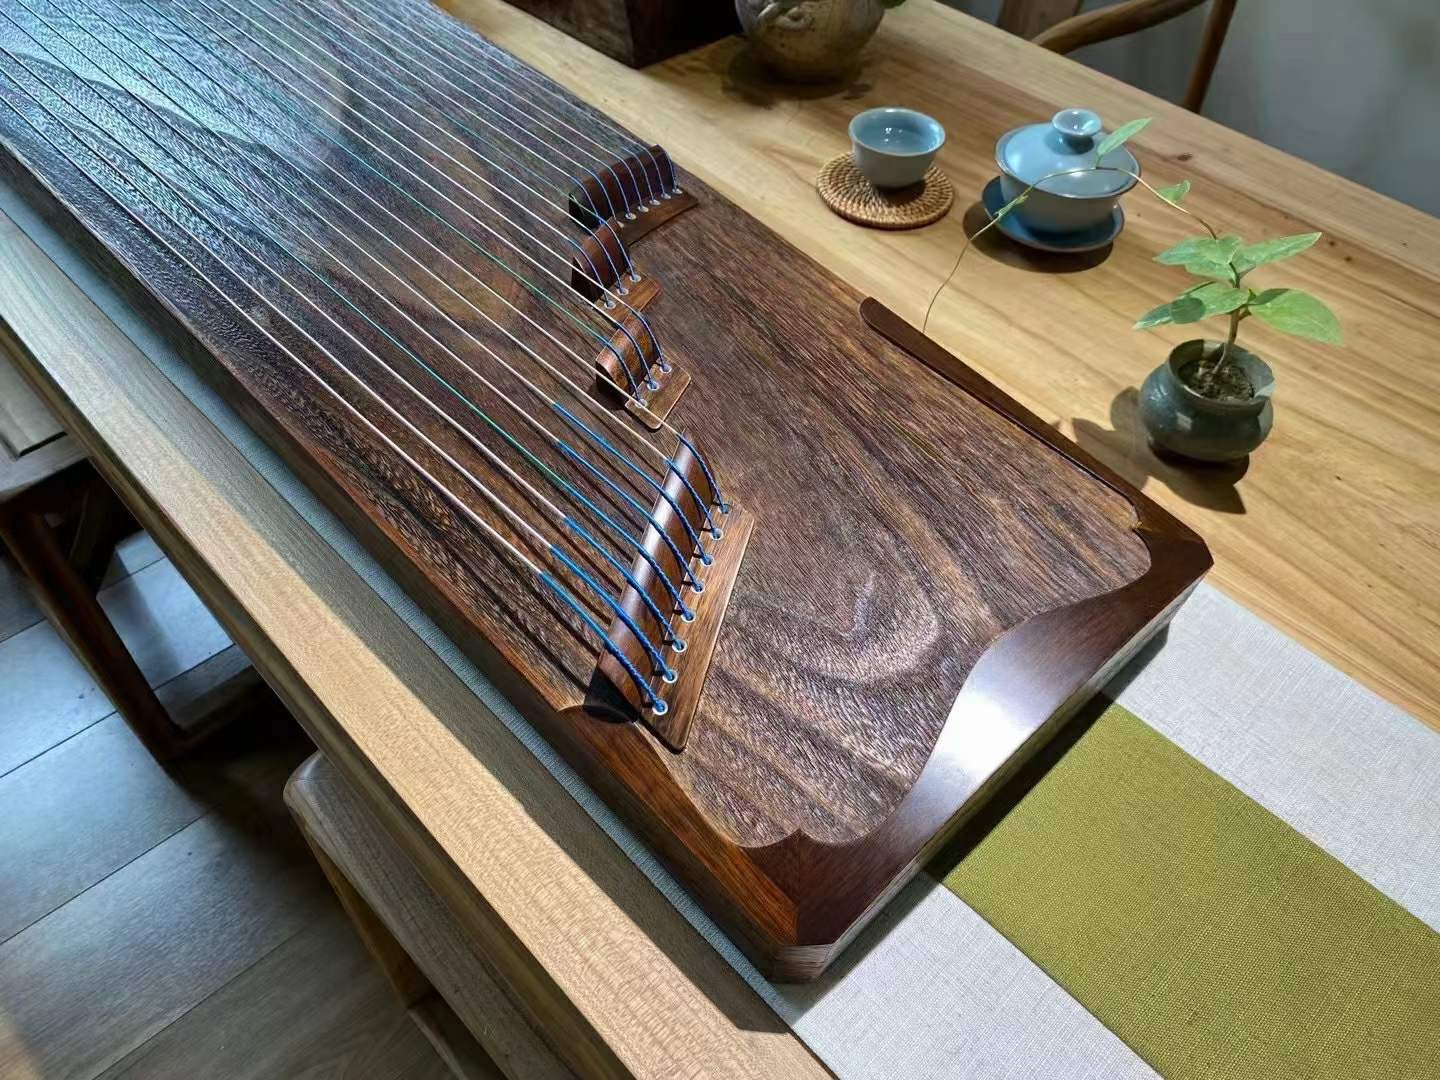 Concert Guzheng